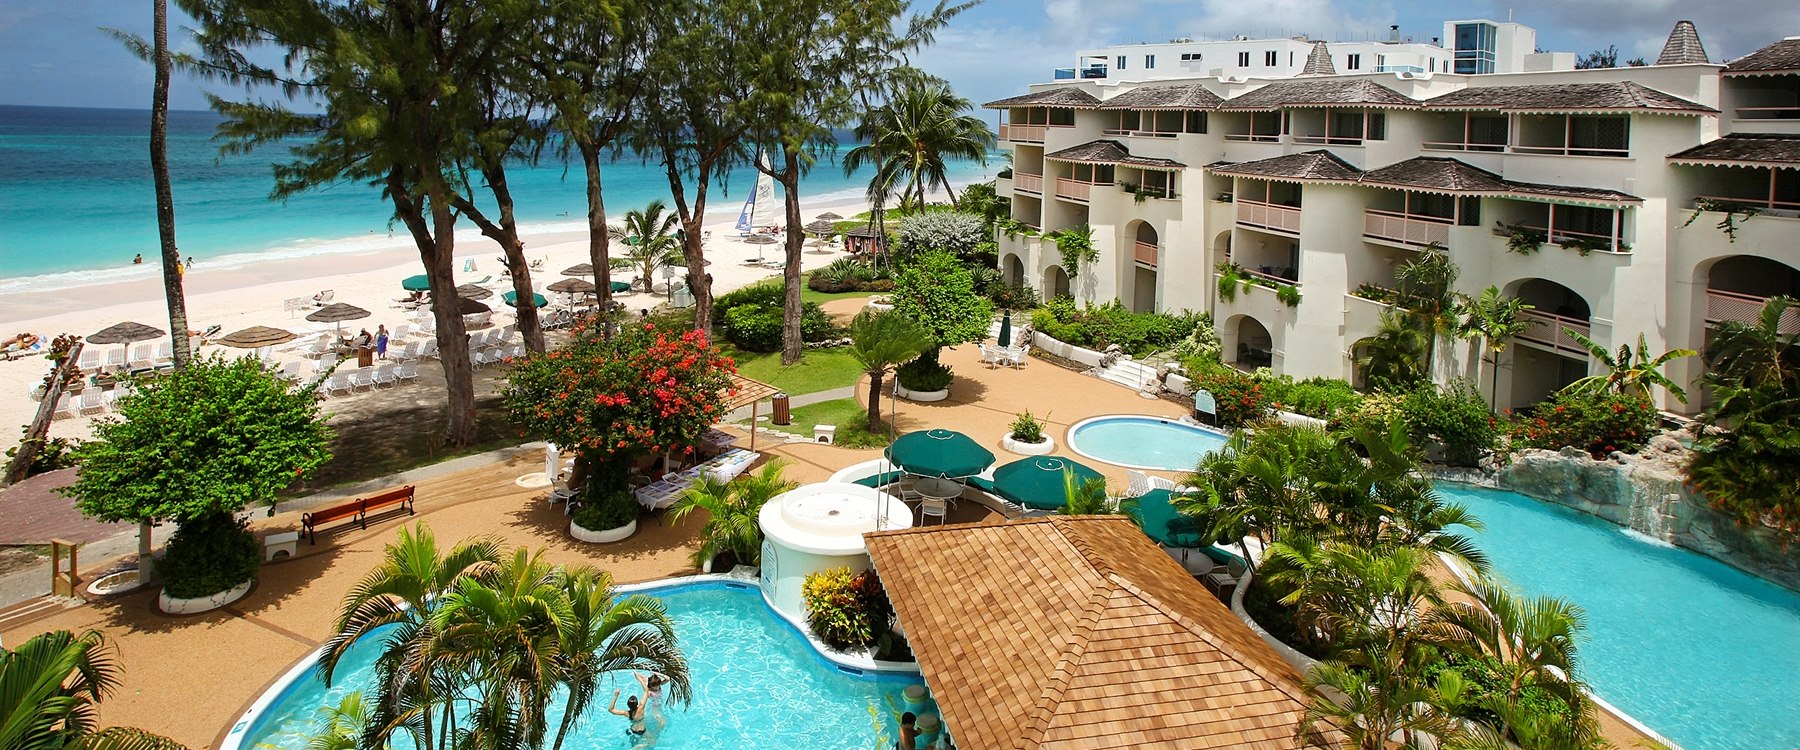 Bougainvillea Barbados Barbados Luxury Hotels - 